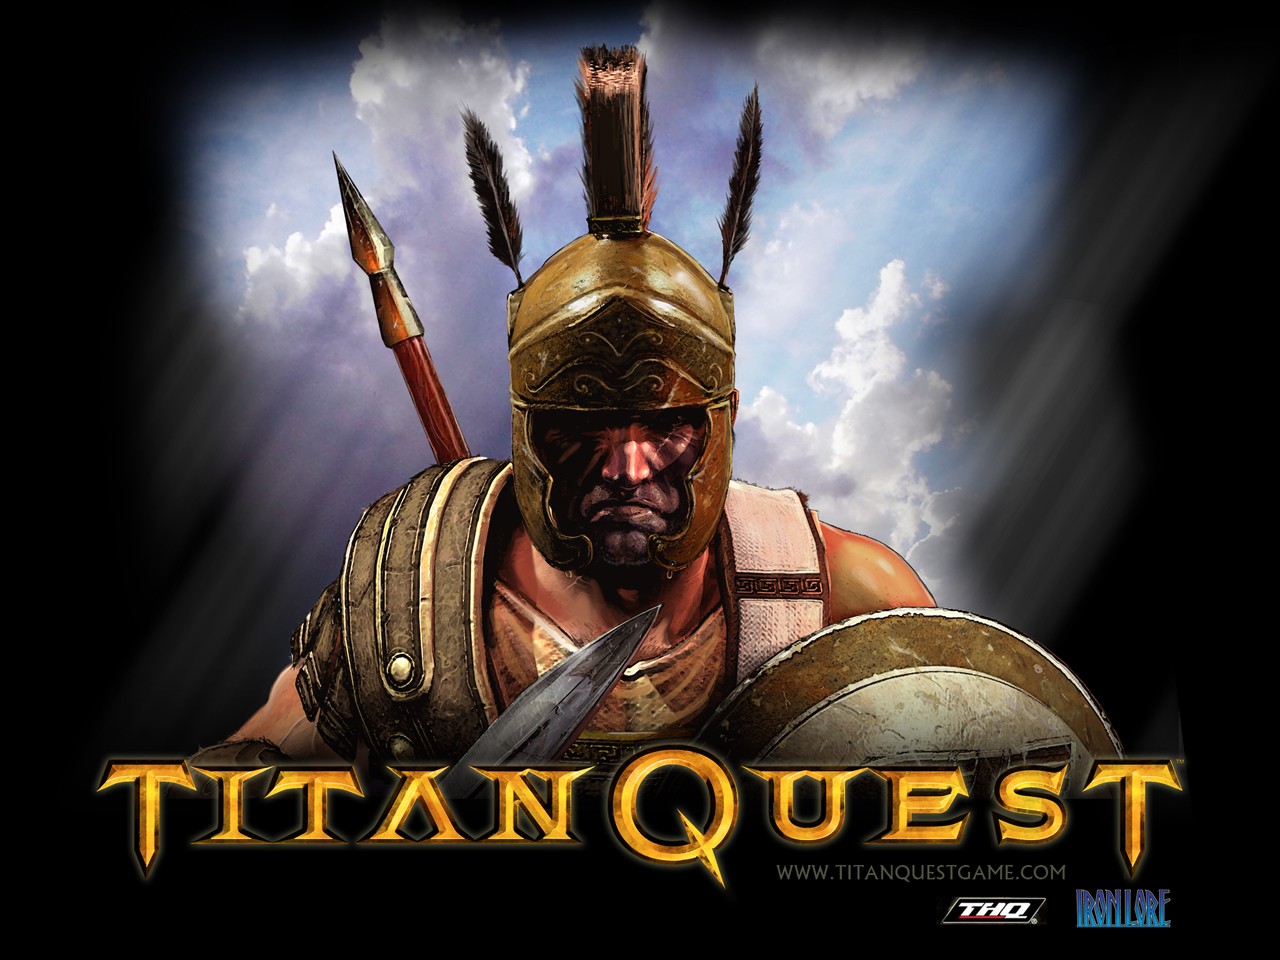 Titan quest steam фото 29